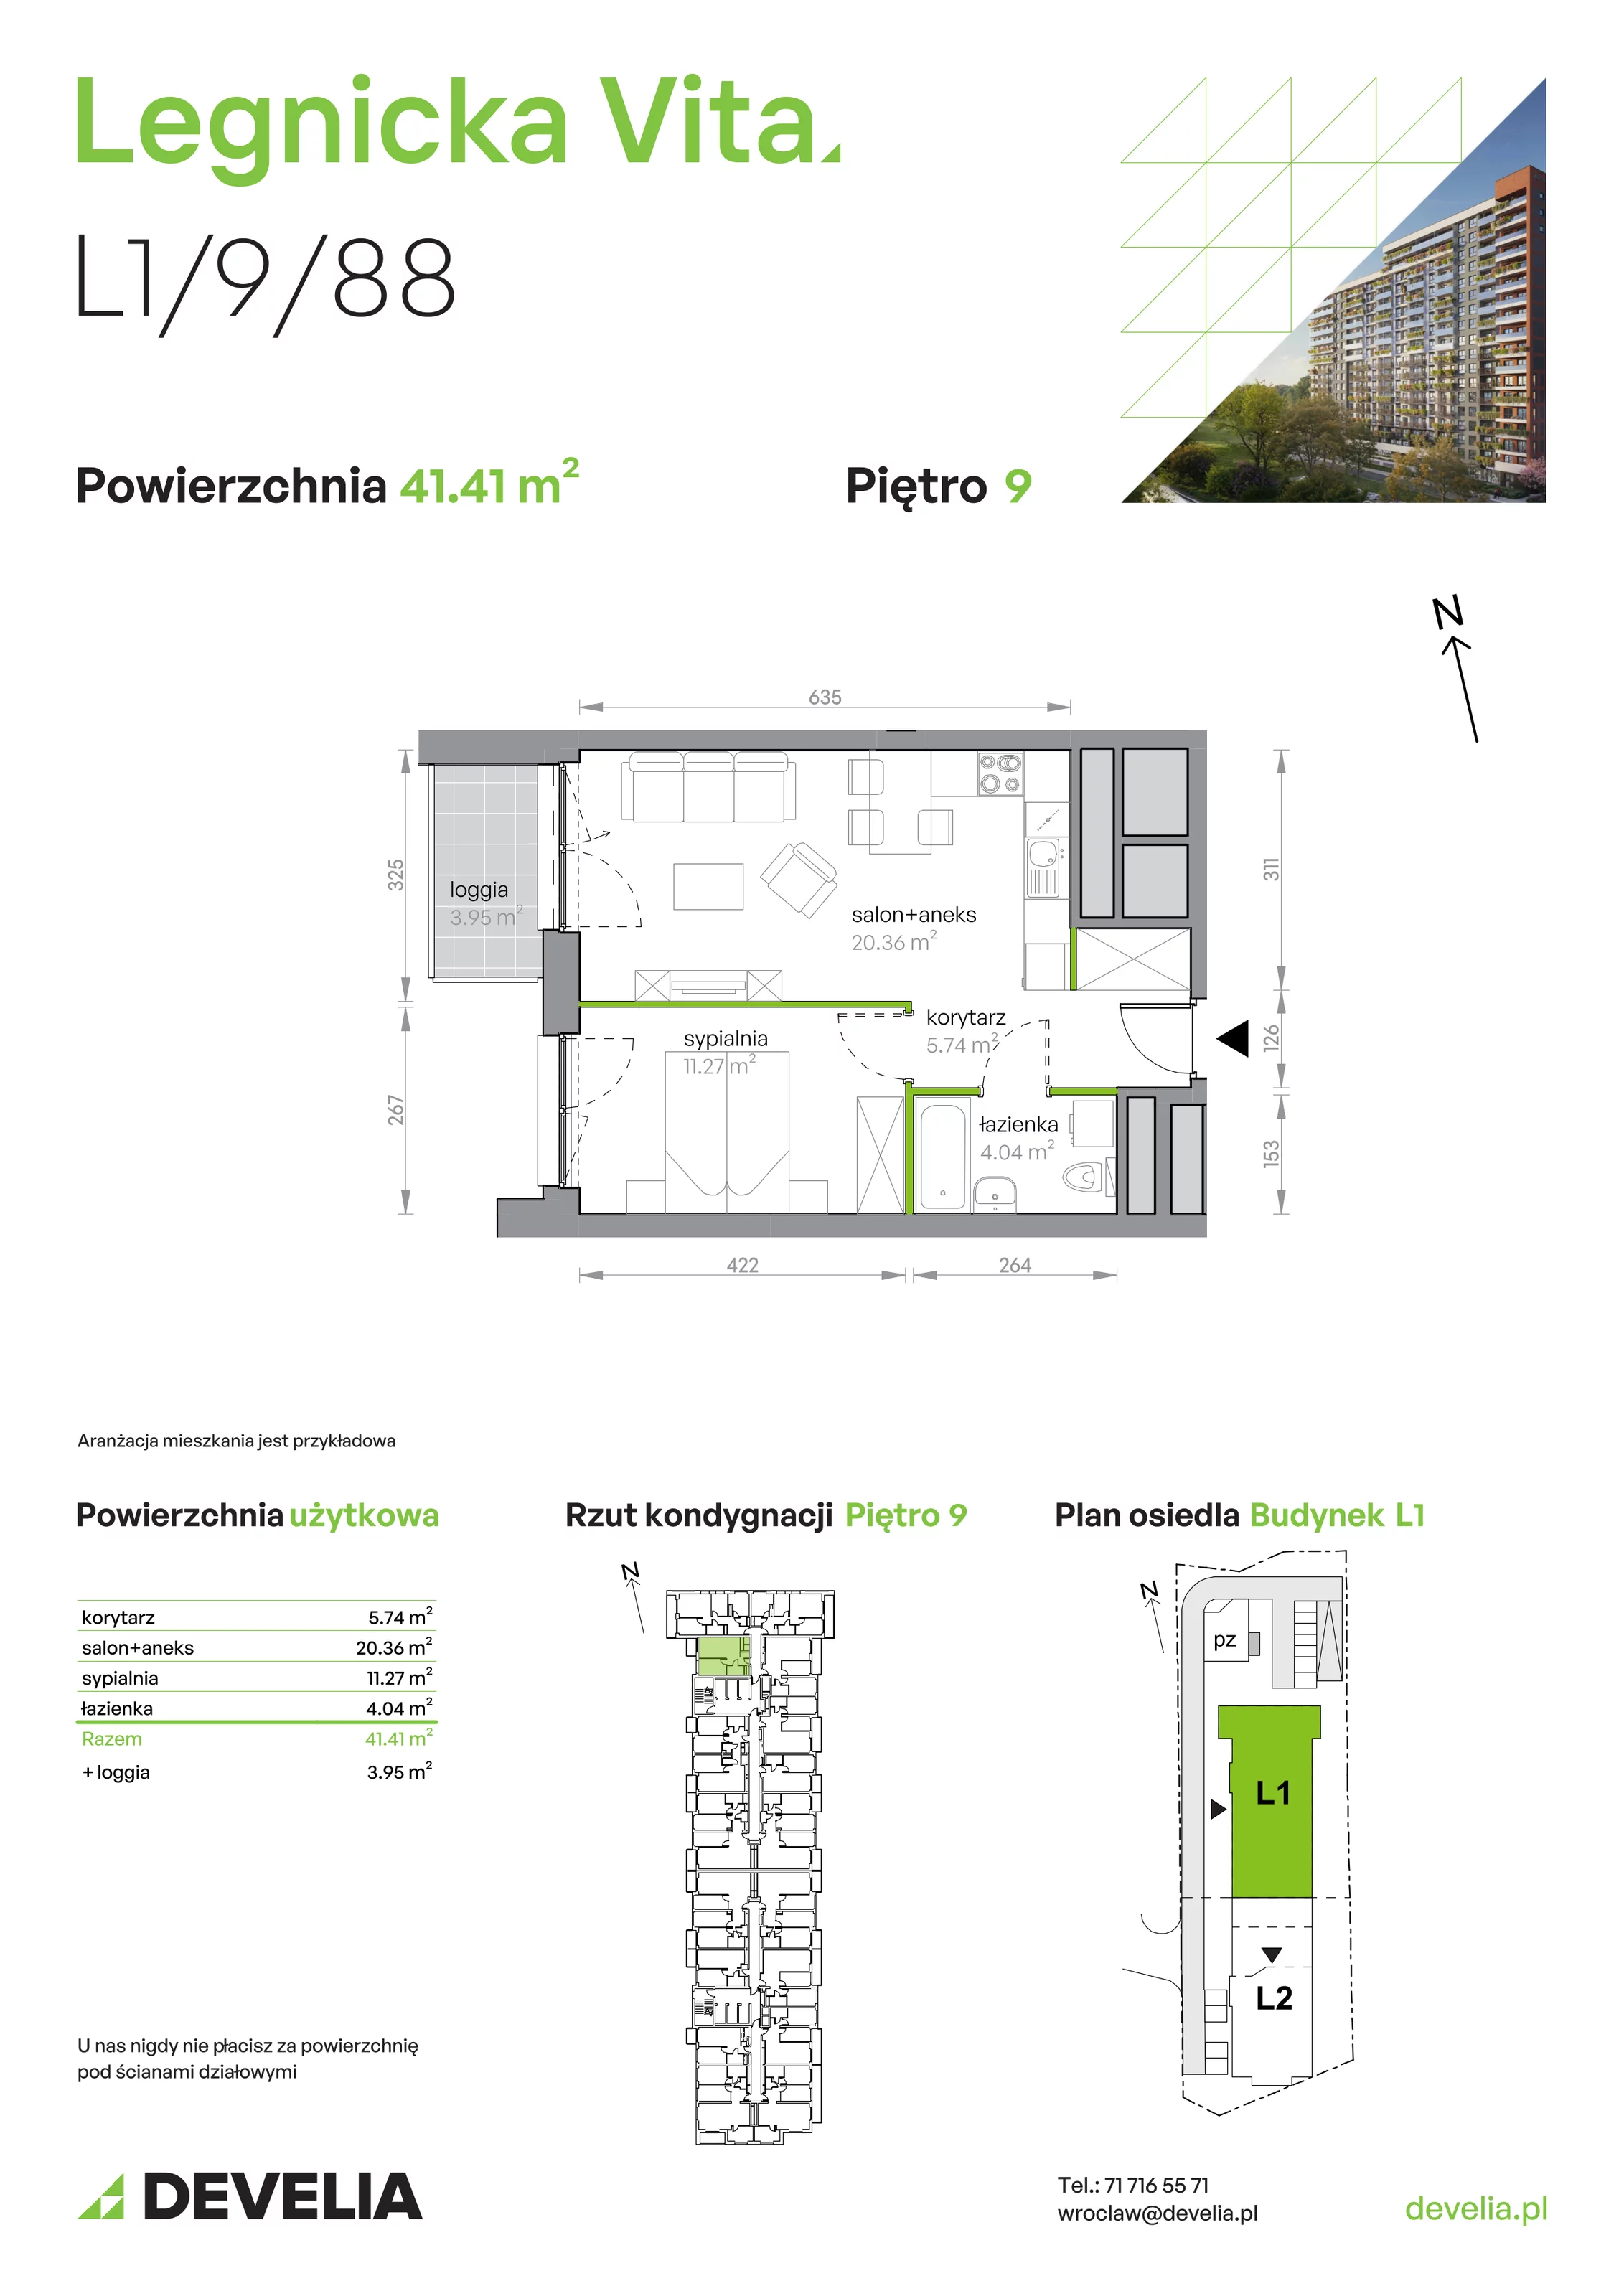 Mieszkanie 41,41 m², piętro 9, oferta nr L1/9/88, Legnicka Vita, Wrocław, Gądów-Popowice Południowe, Popowice, ul. Legnicka 52 A